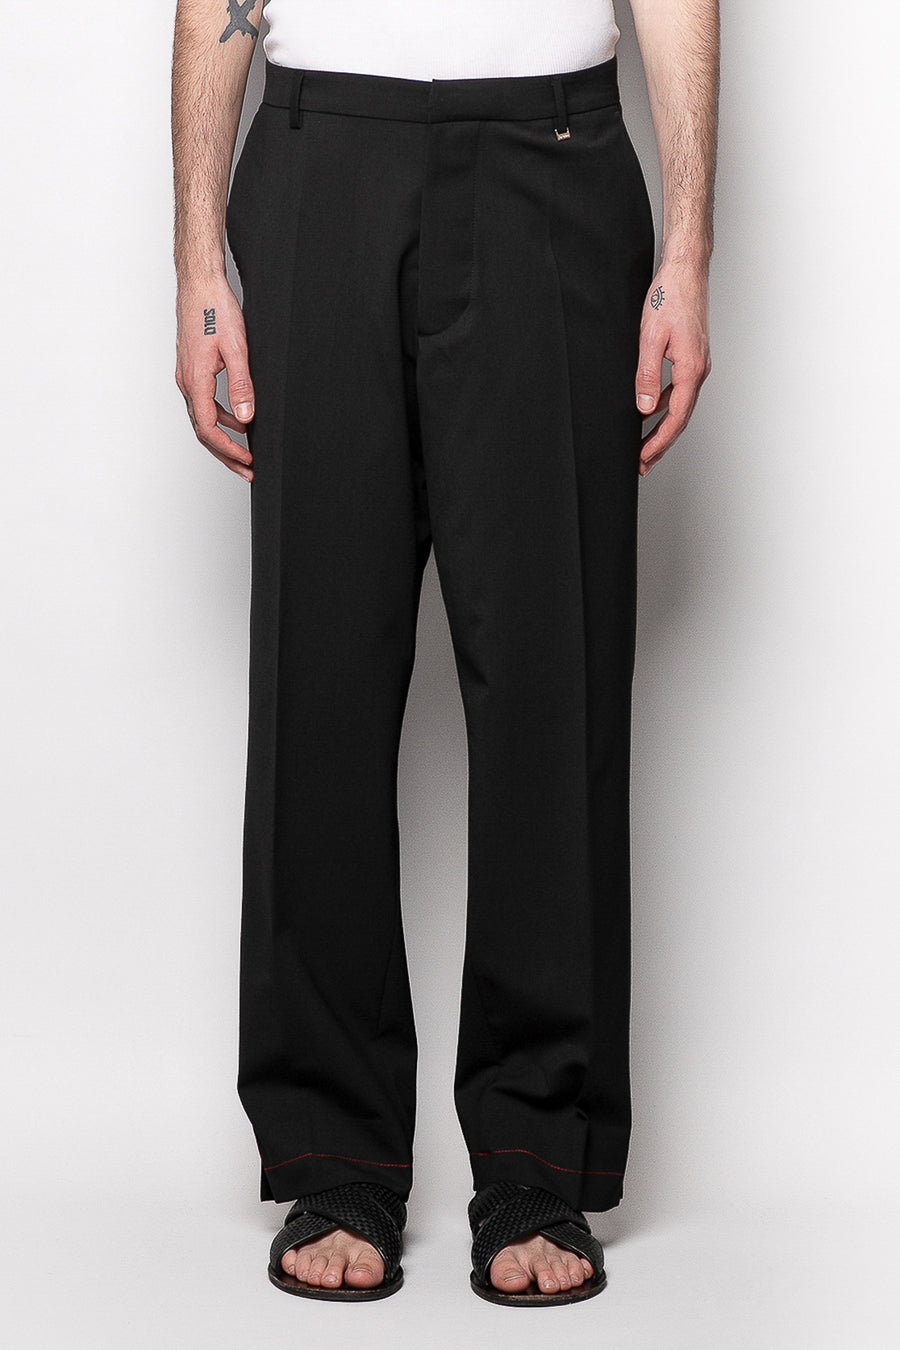 Pantalone fondo ampio con cuciture a contrasto in misto lana - Nero